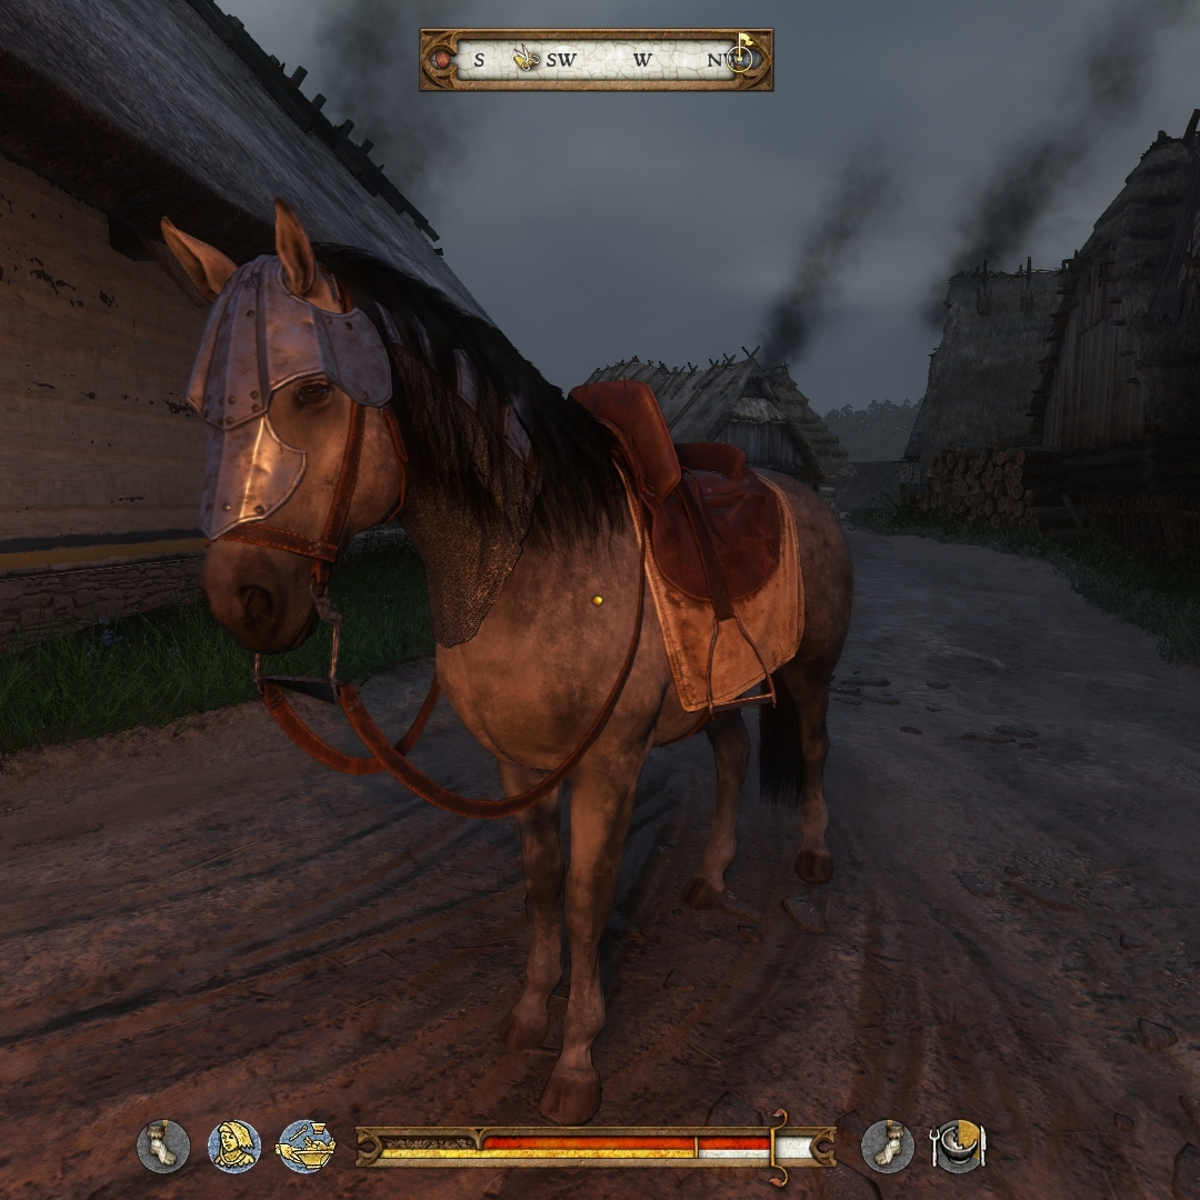 Kingdom Come: Deliverance - como obter um cavalo e equipá-lo com armadura